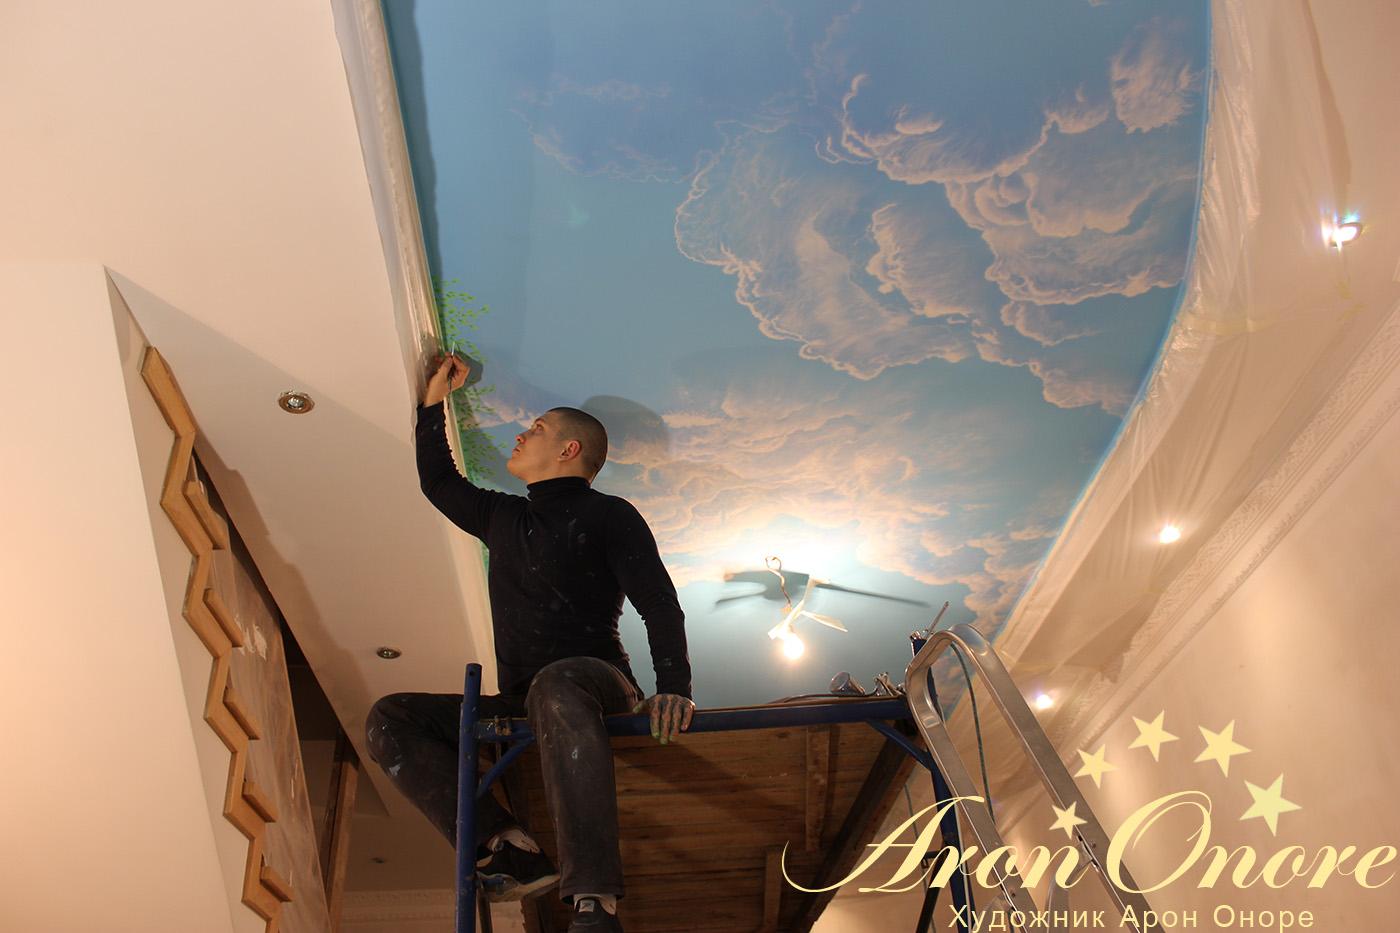 Арон Оноре (художник-аэрограф) рисует розы цветы на потолке